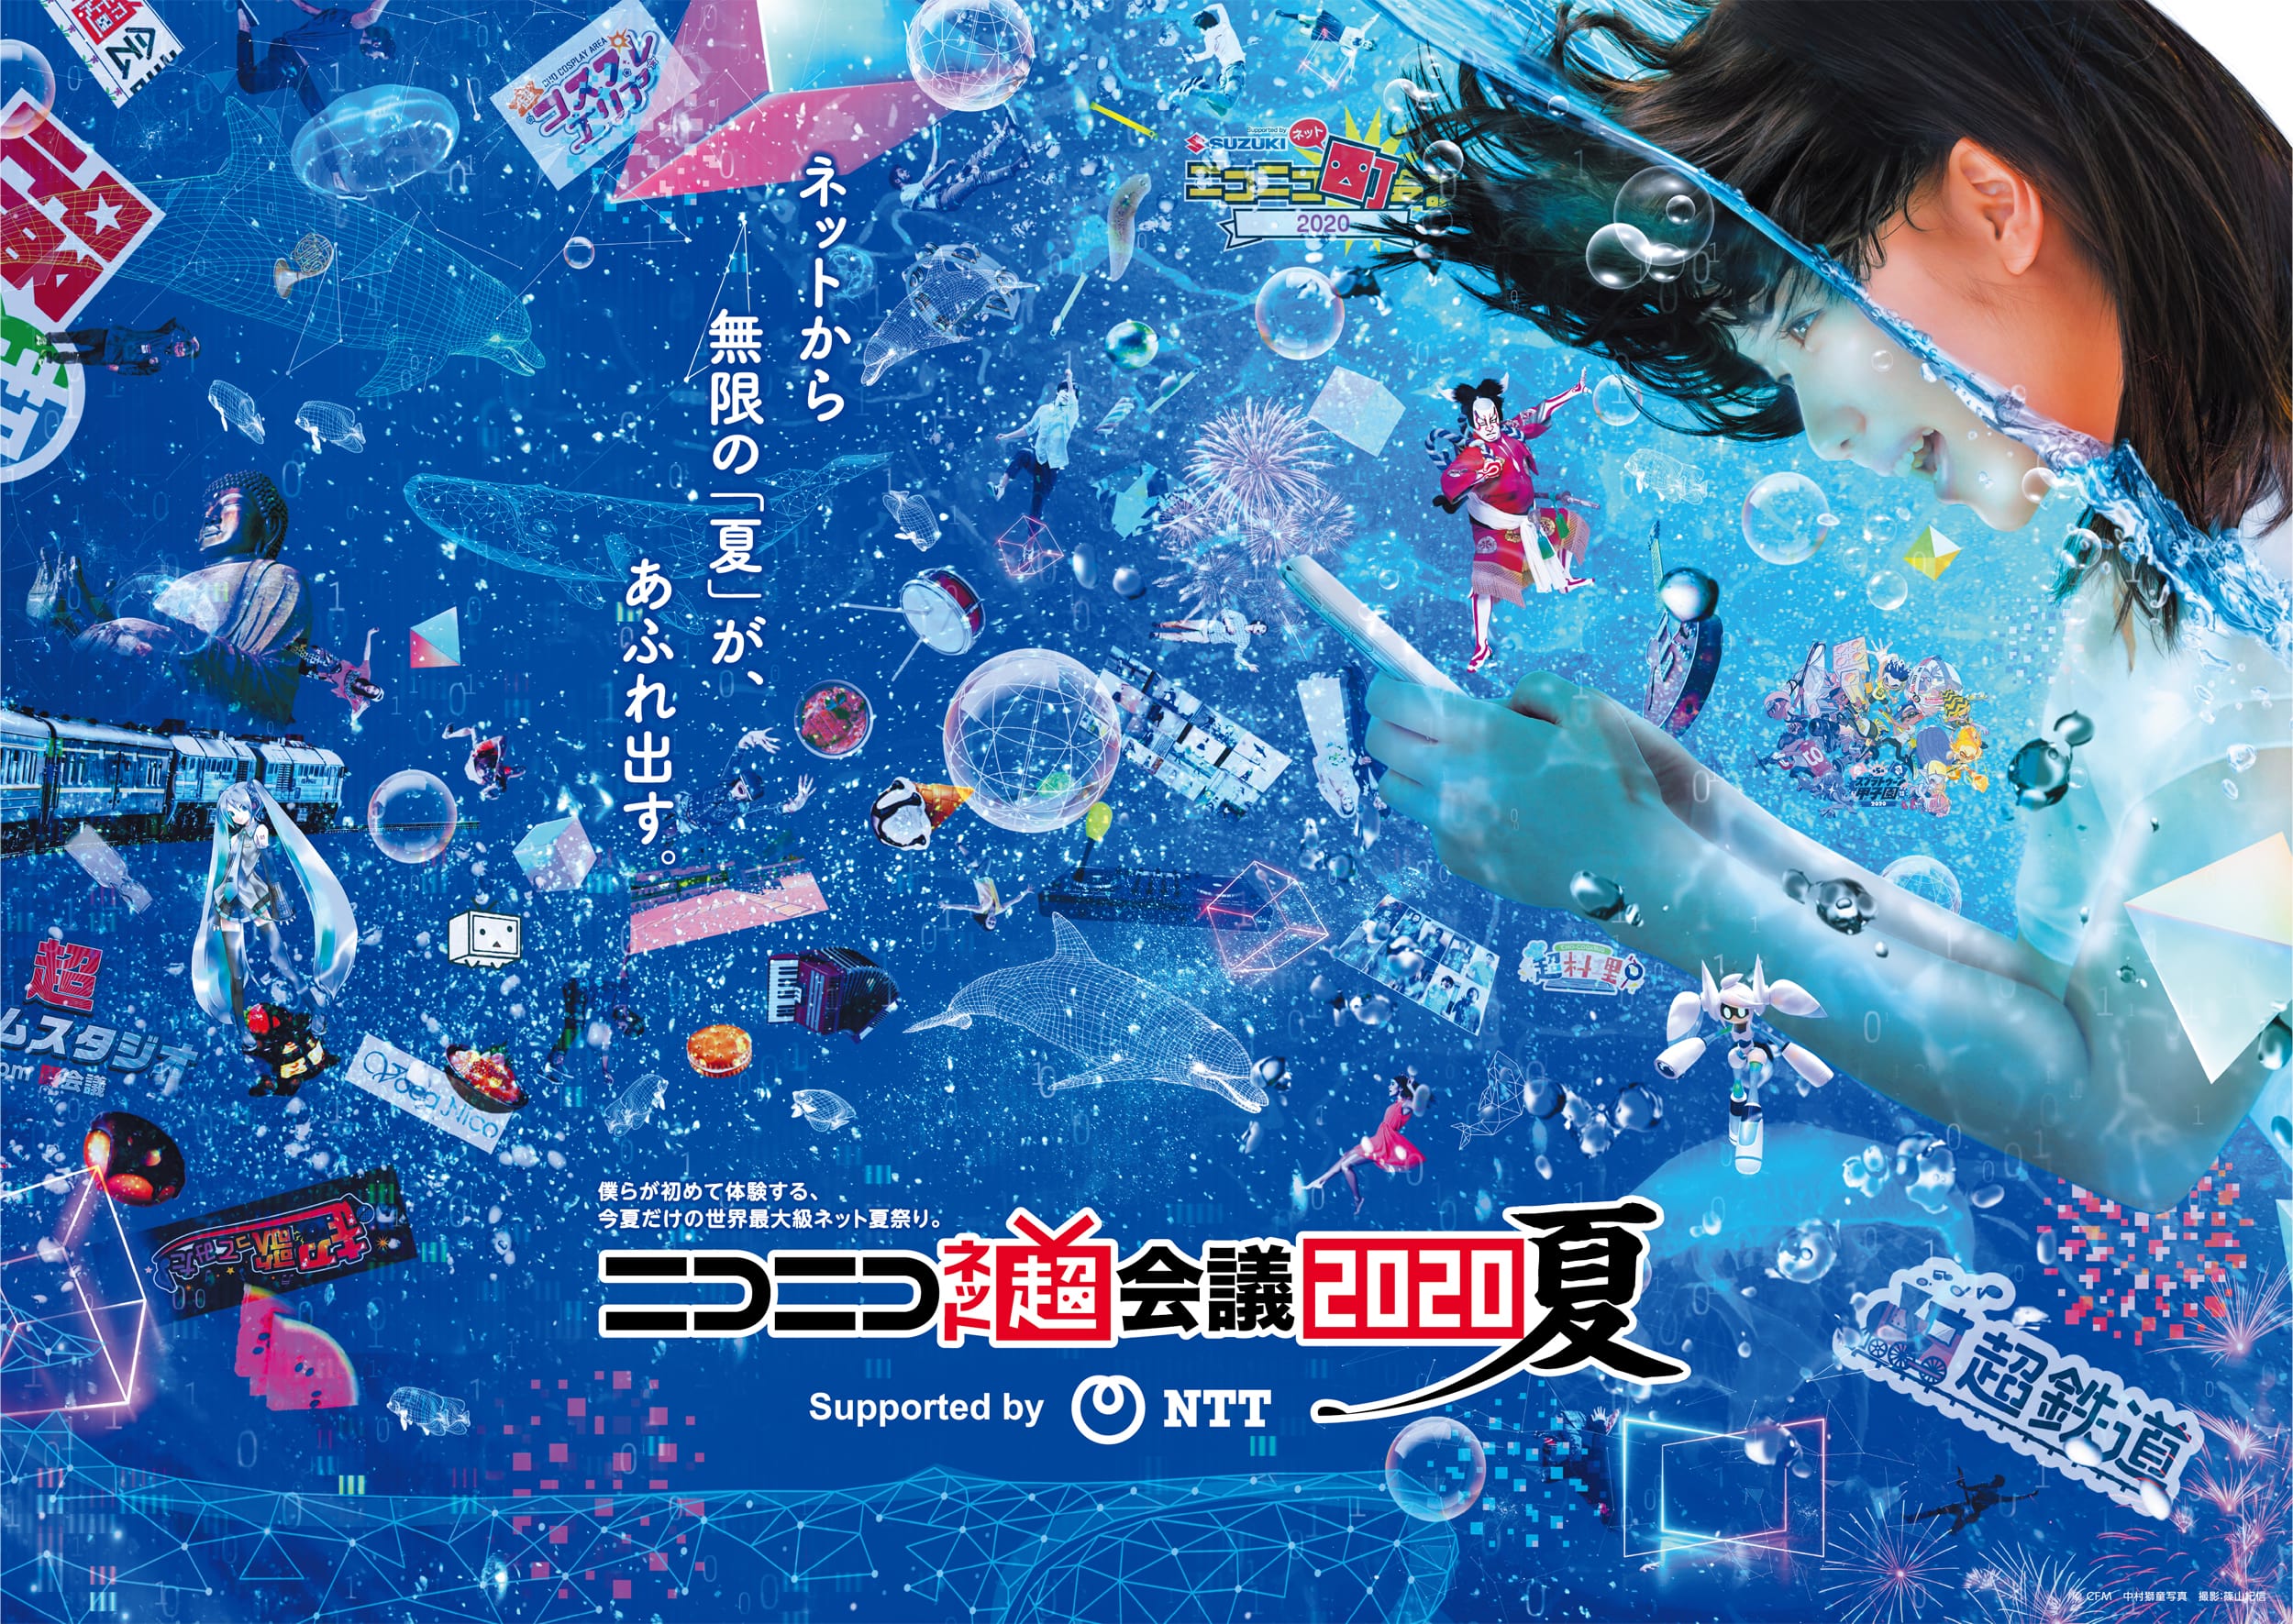 Niconico Net Chokaigi 2020 Summer Edition